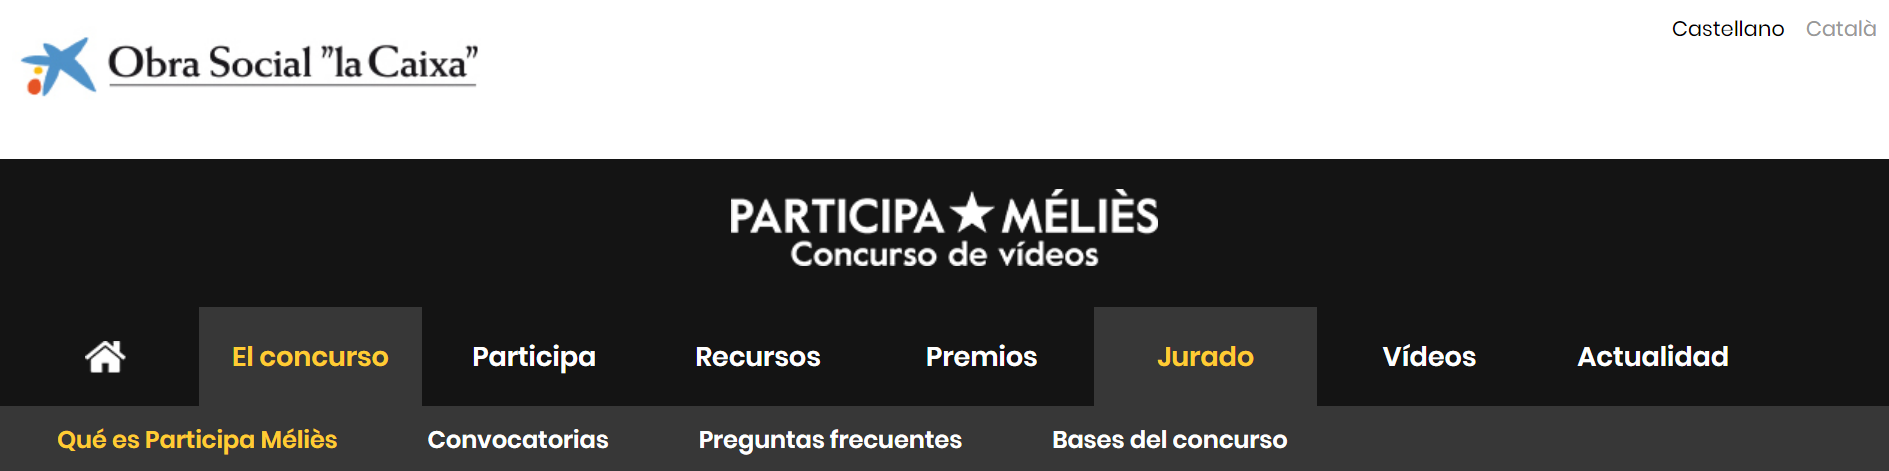 Imagen de la cabecera de la web de Participa Mèliés.